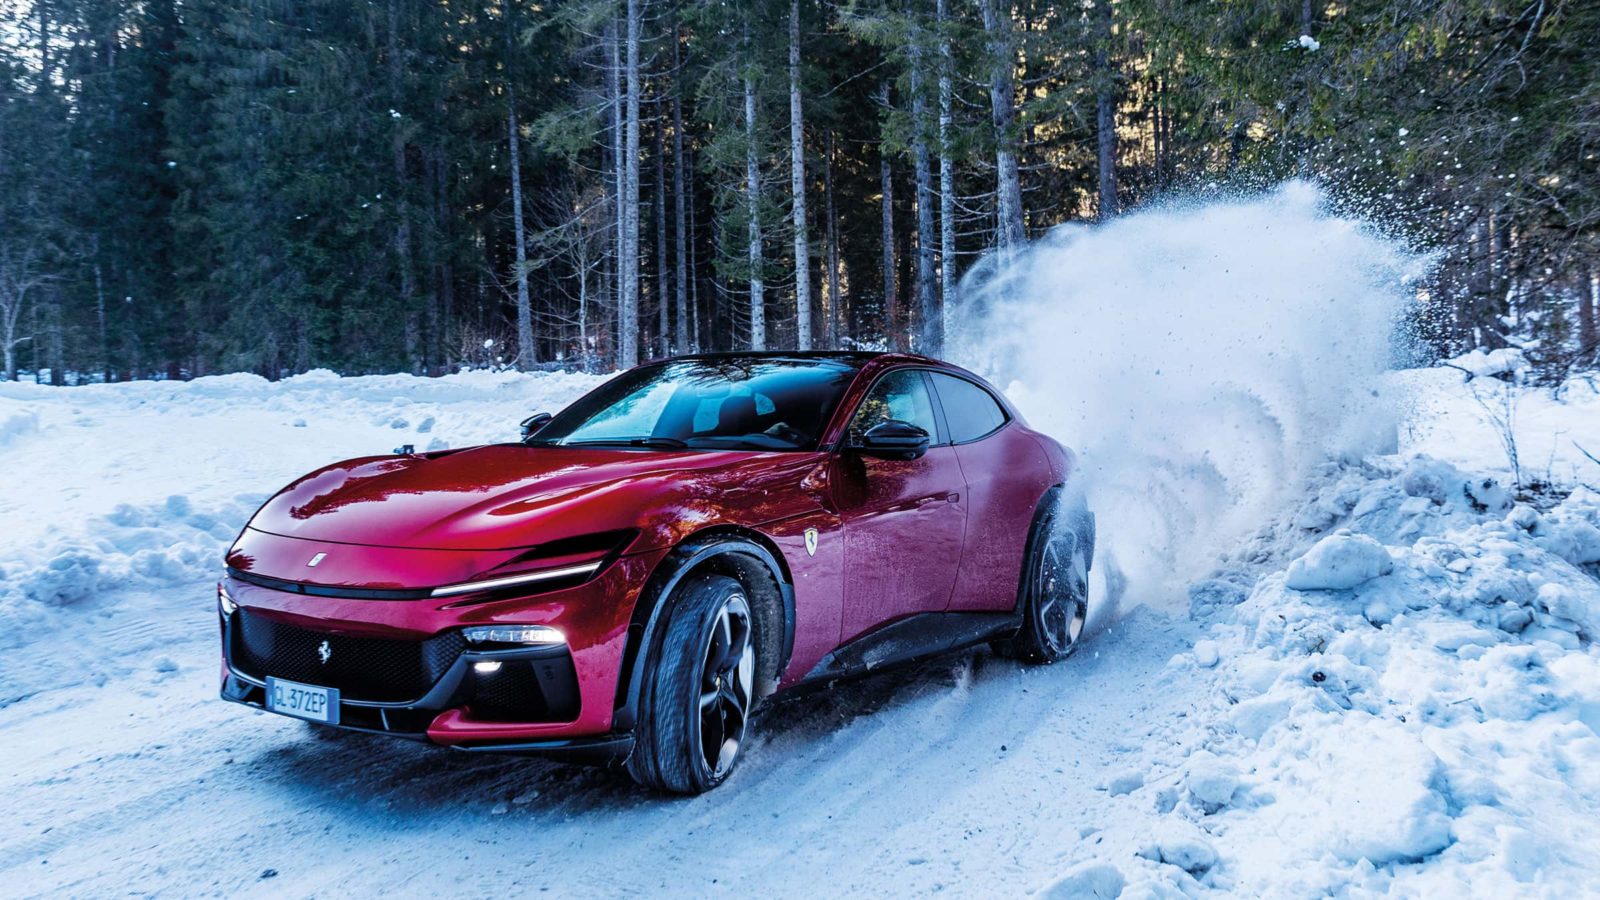 Ferrari Purosangue drifting in the snow